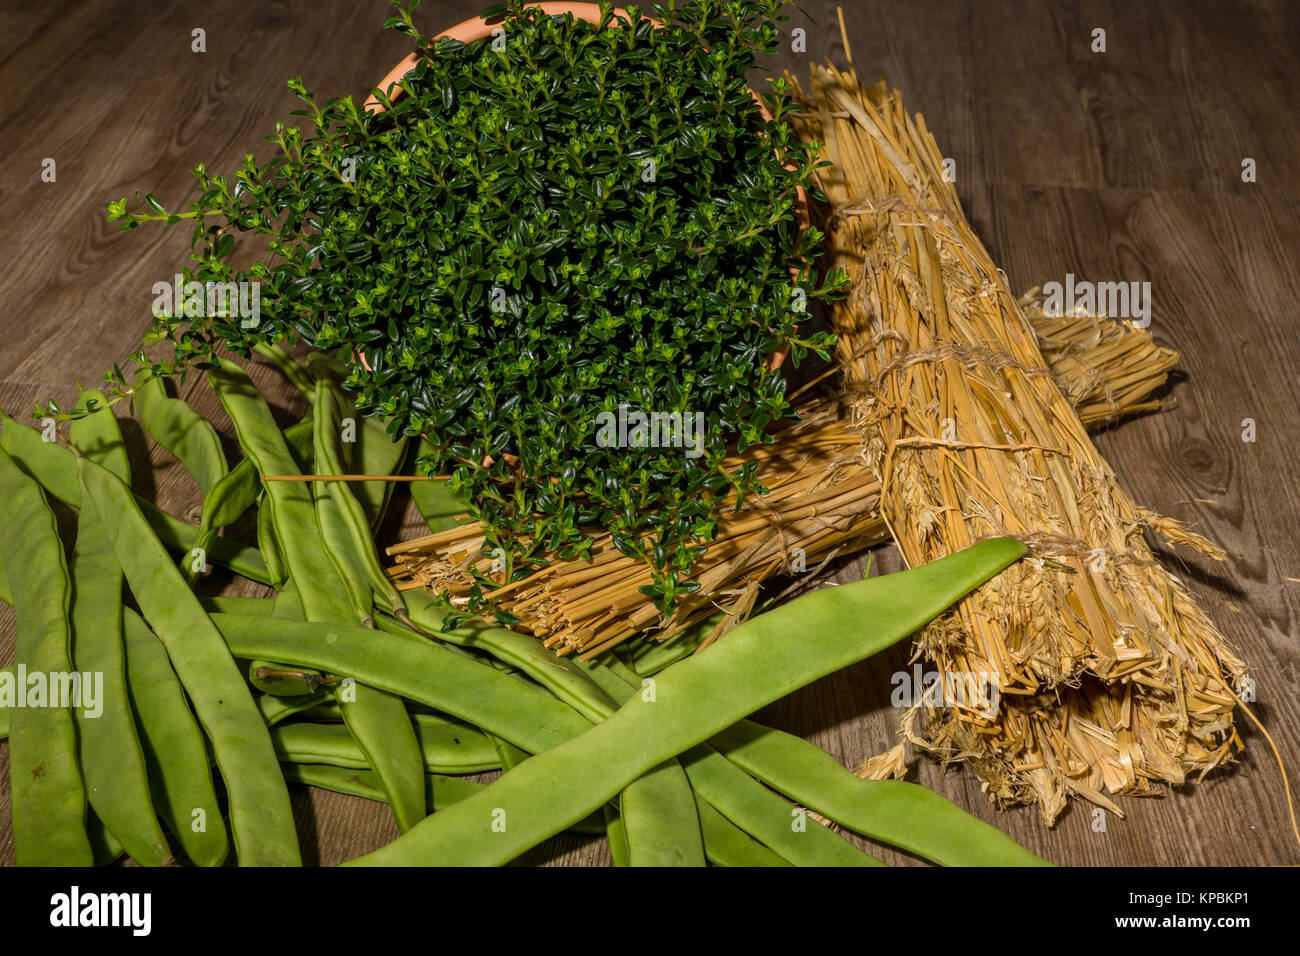 Grüne Bohnen mit einer Bohnenkrautpflanze im Topf Stock Photo